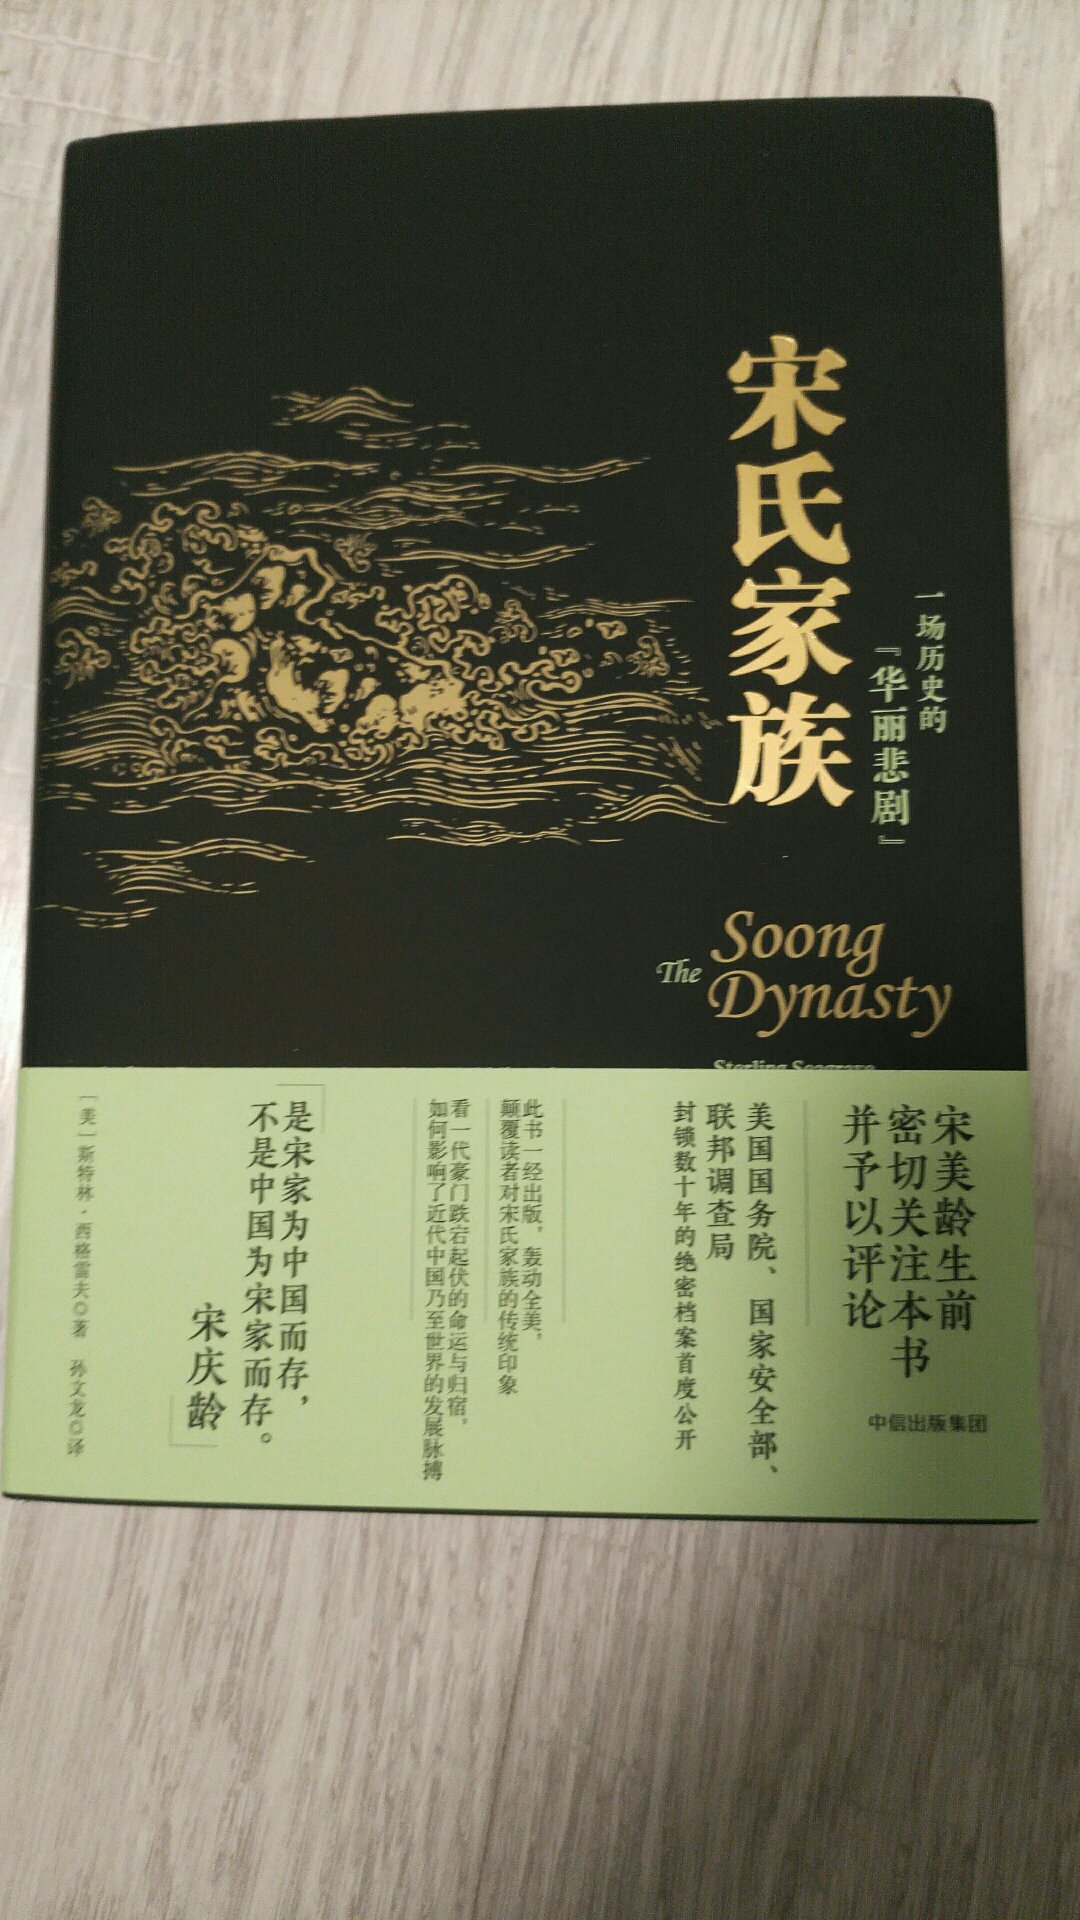 书的质量很不错。一直很喜欢中国近代史，这本书内容非常好。活动买的，价格很优惠。好评好评。